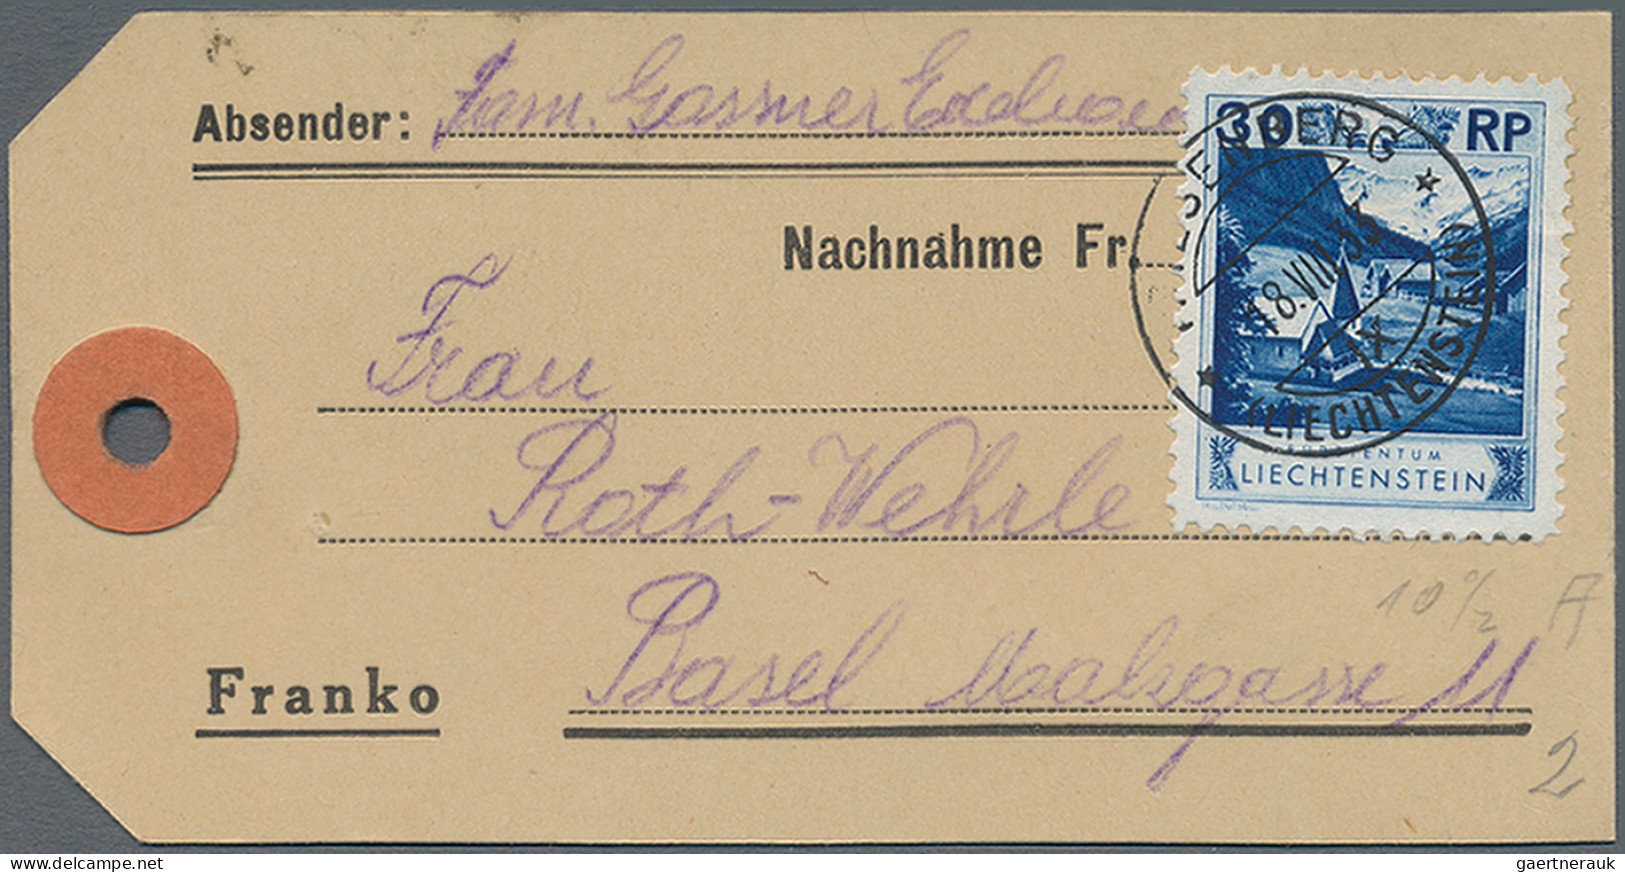 Liechtenstein: 1930, sauberes Lot über 30 Briefen und Karten der Kosel-Freimarke